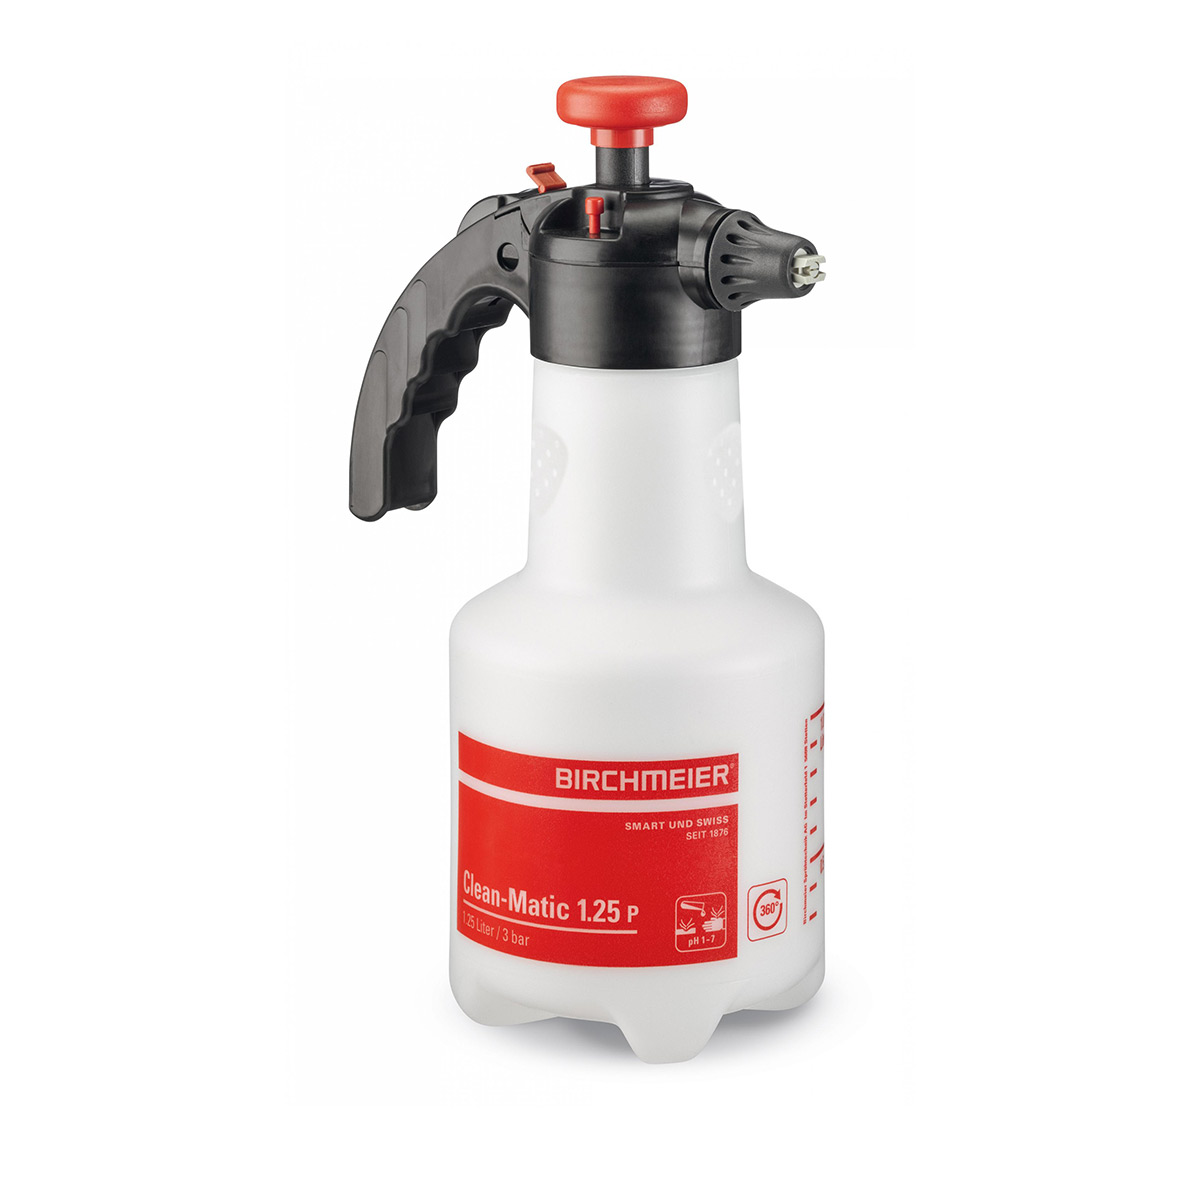 Accumulateur de pression pour pulvérisateur, Clean-Matic 1.25 P